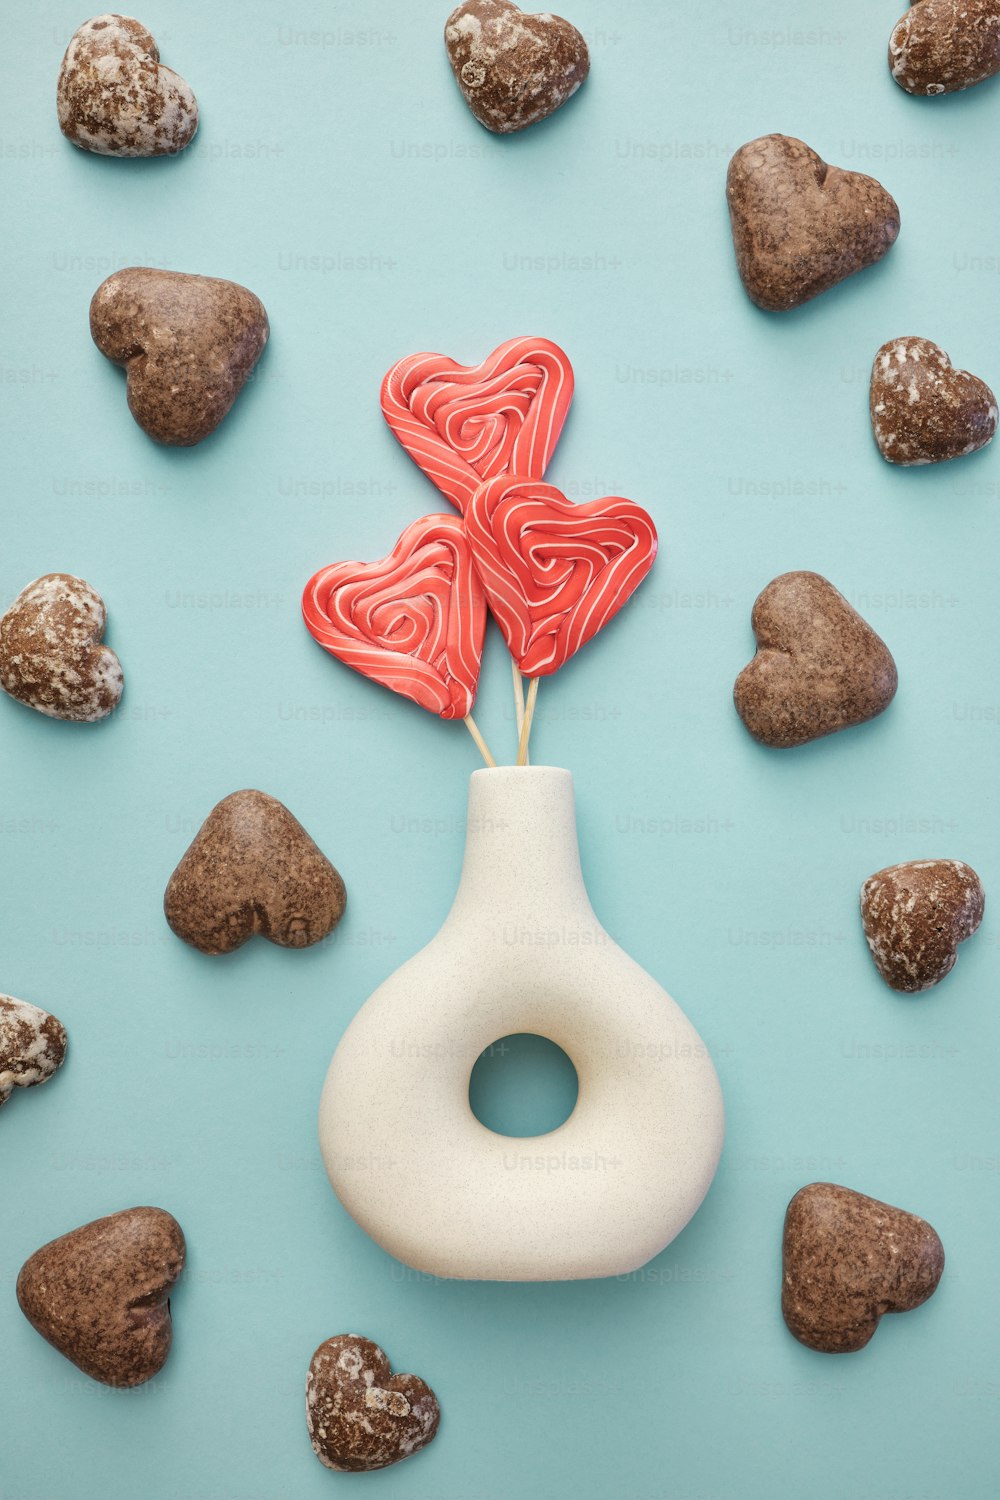 une sucette en forme de cœur dans un vase entouré de rochers